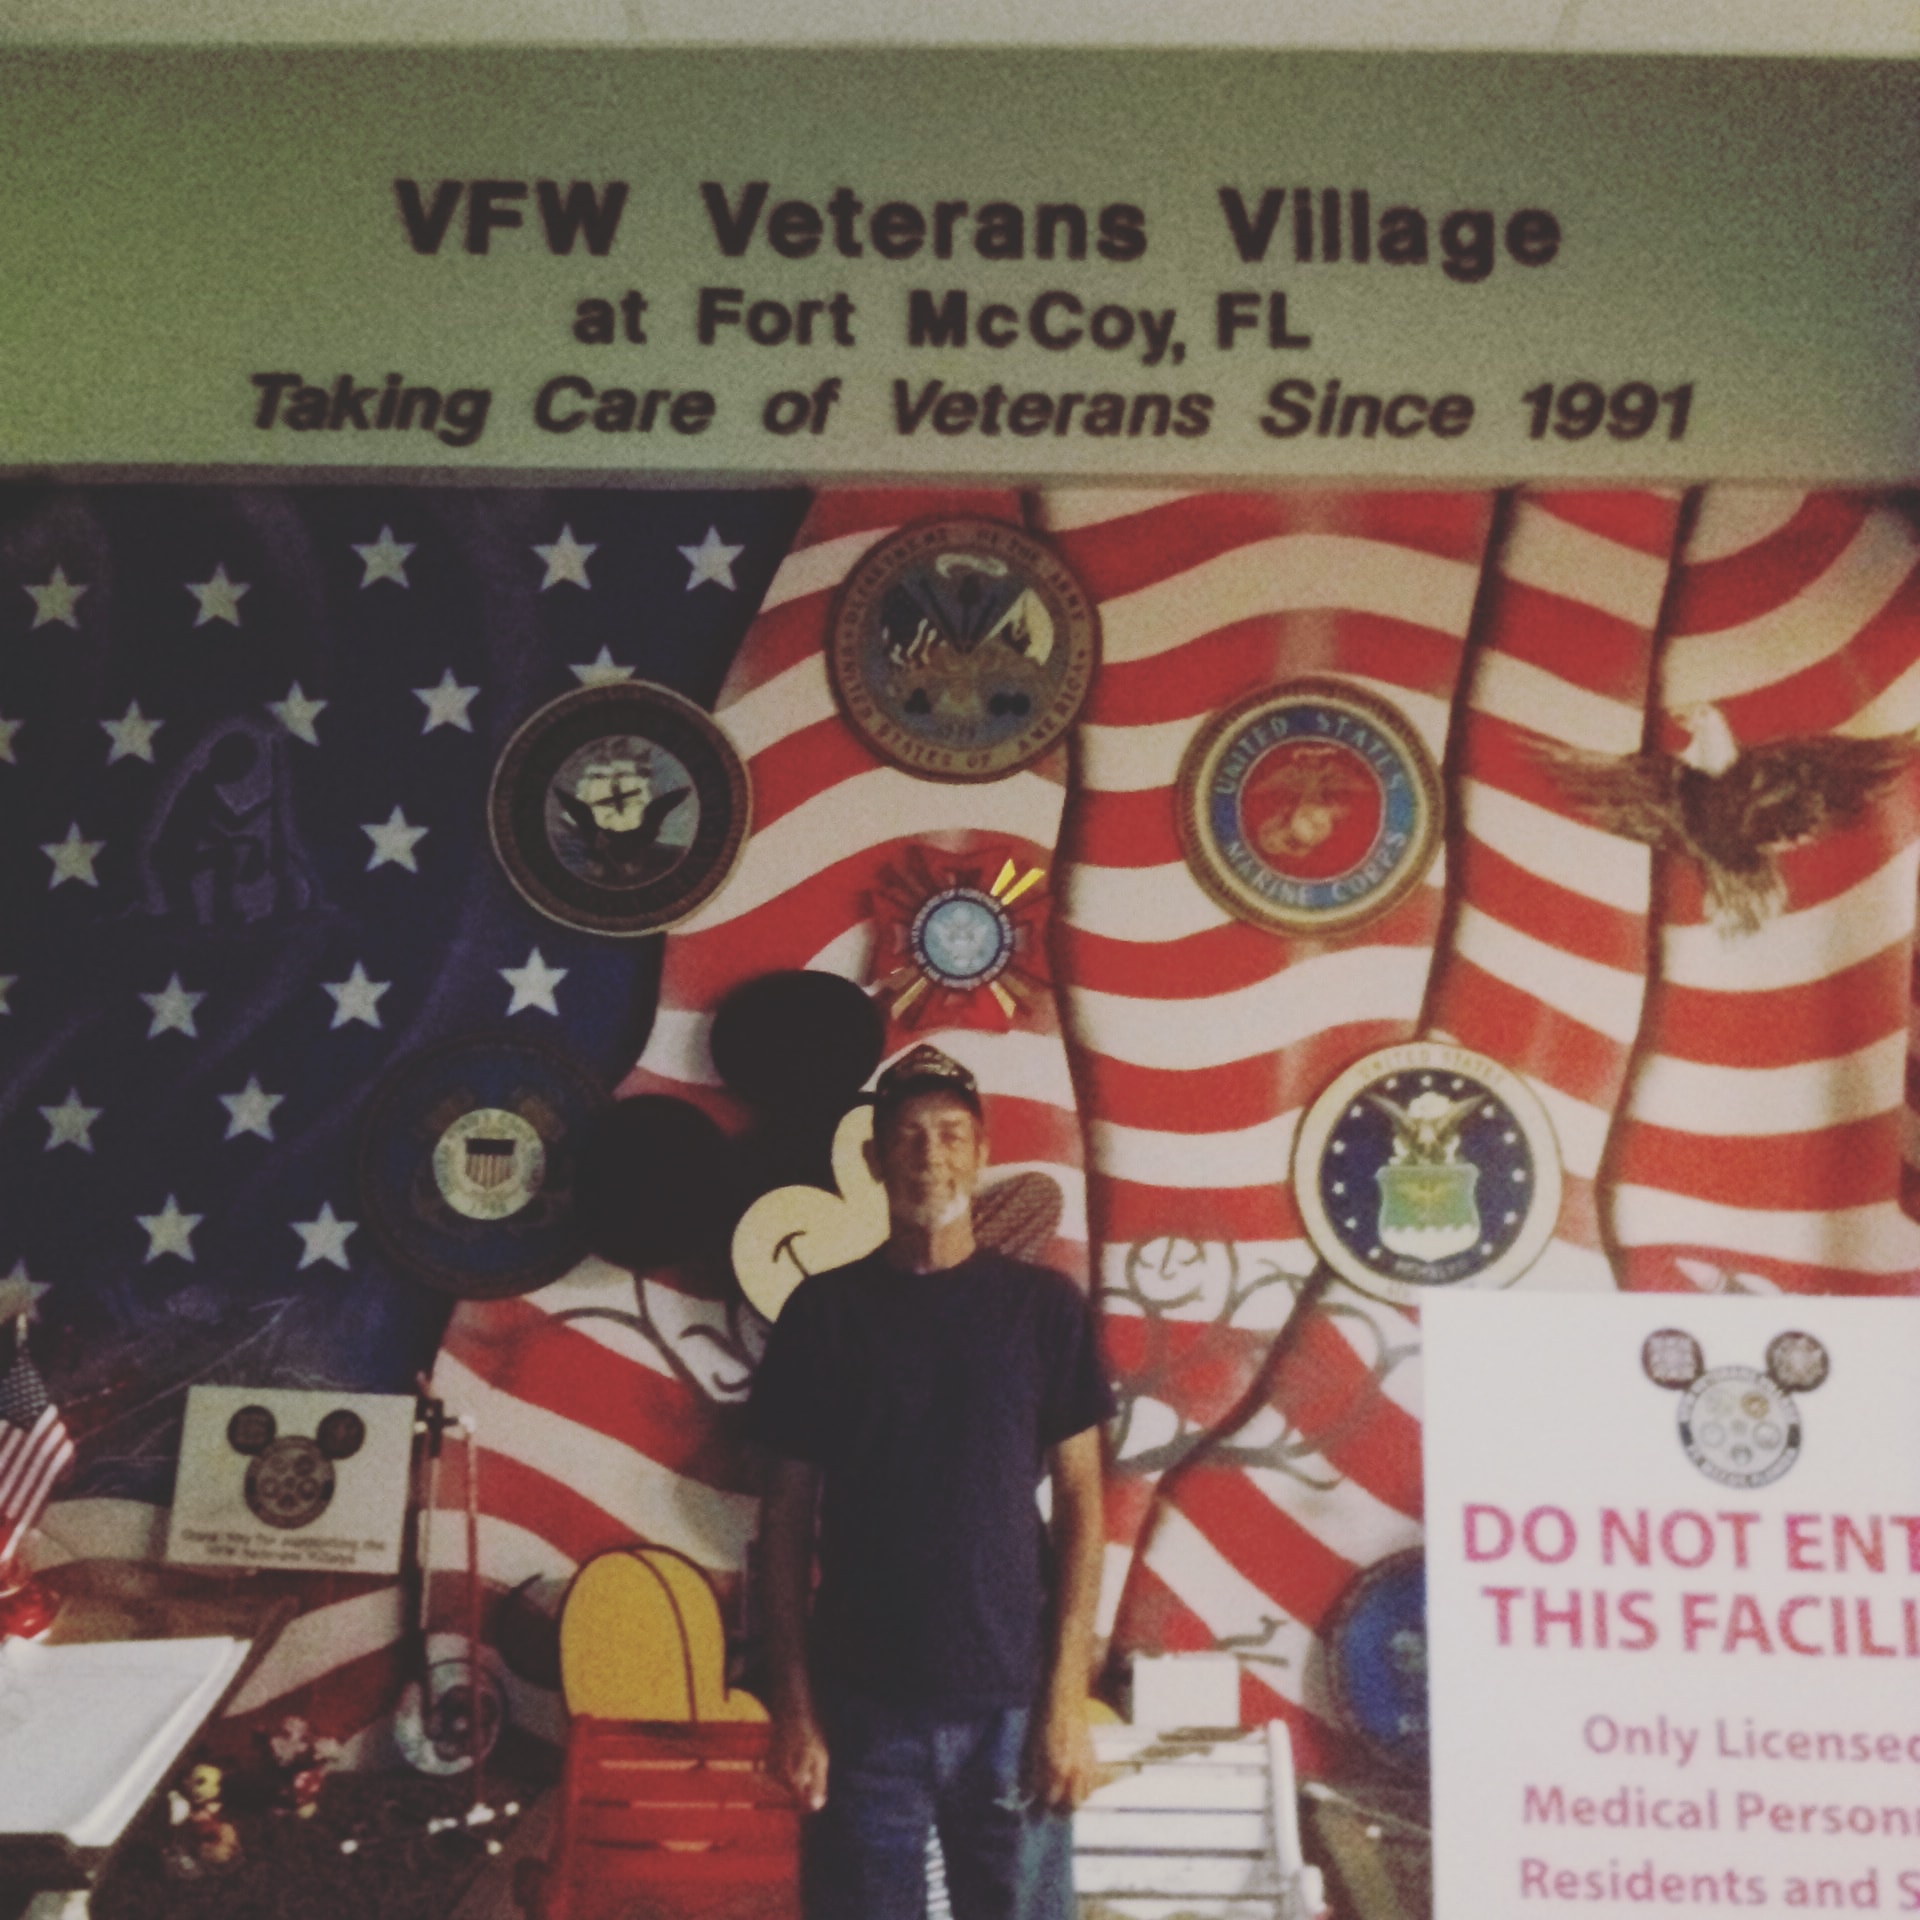 residences | vfw veterans village 13005 NE 135th St, Fort McCoy Florida 32134